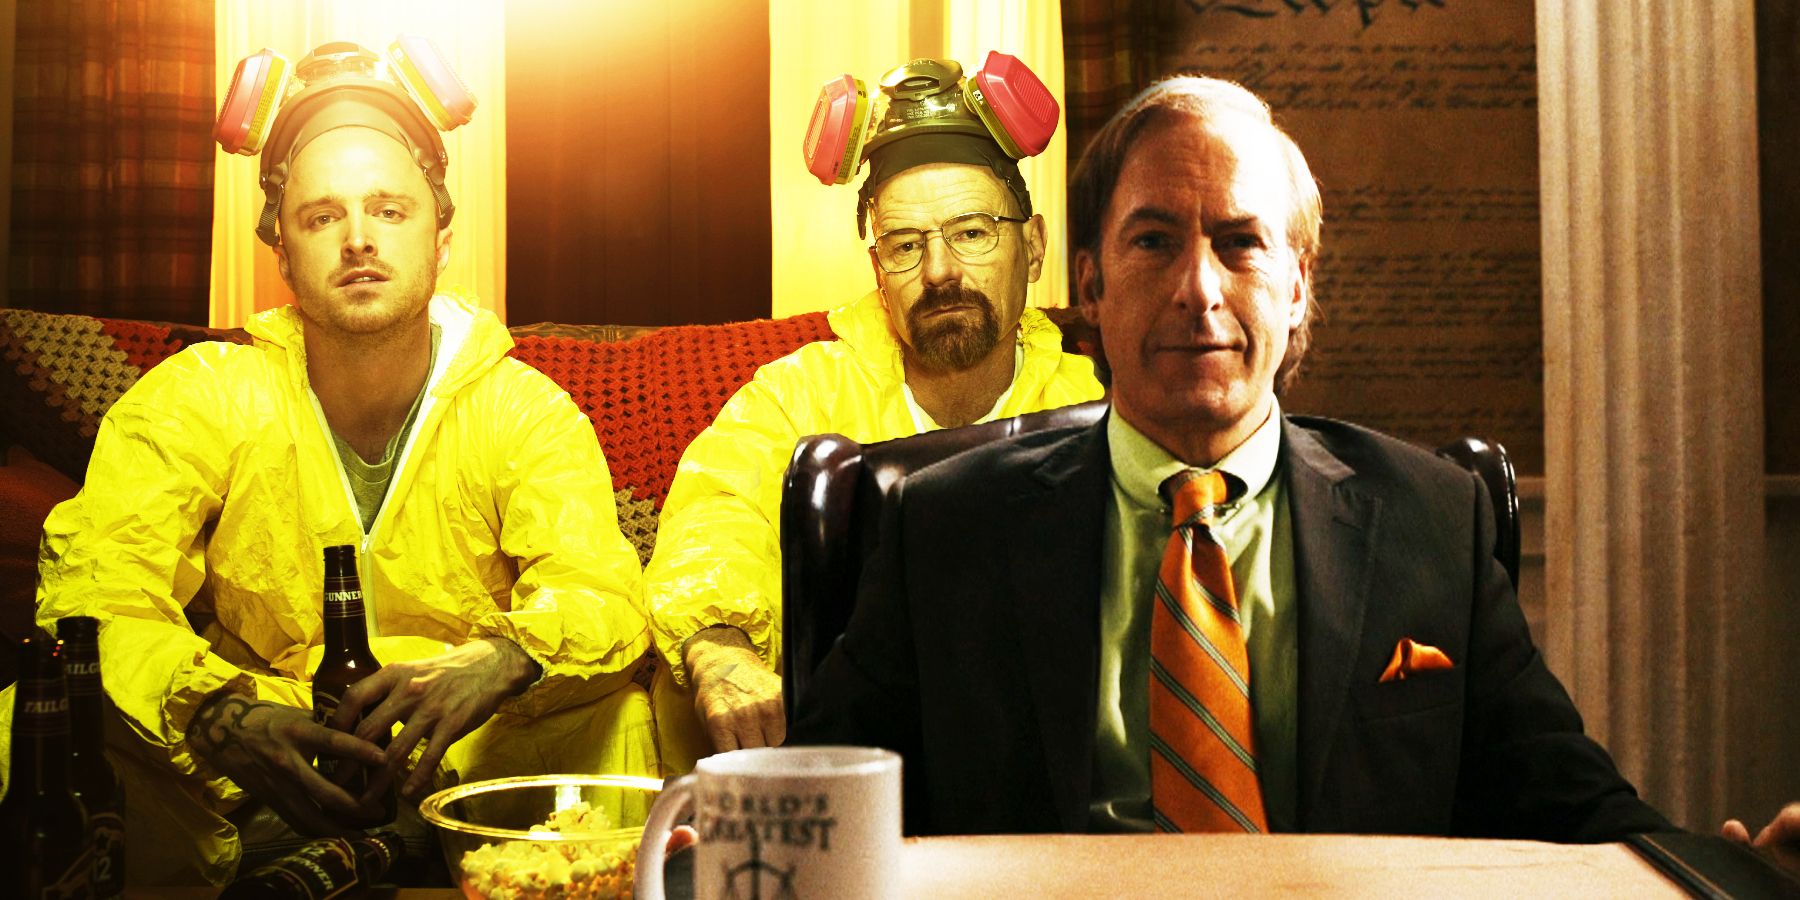 La temporada 6 de Better Call Saul tendrá más Walt y Jesse se burlan de Bob Odenkirk